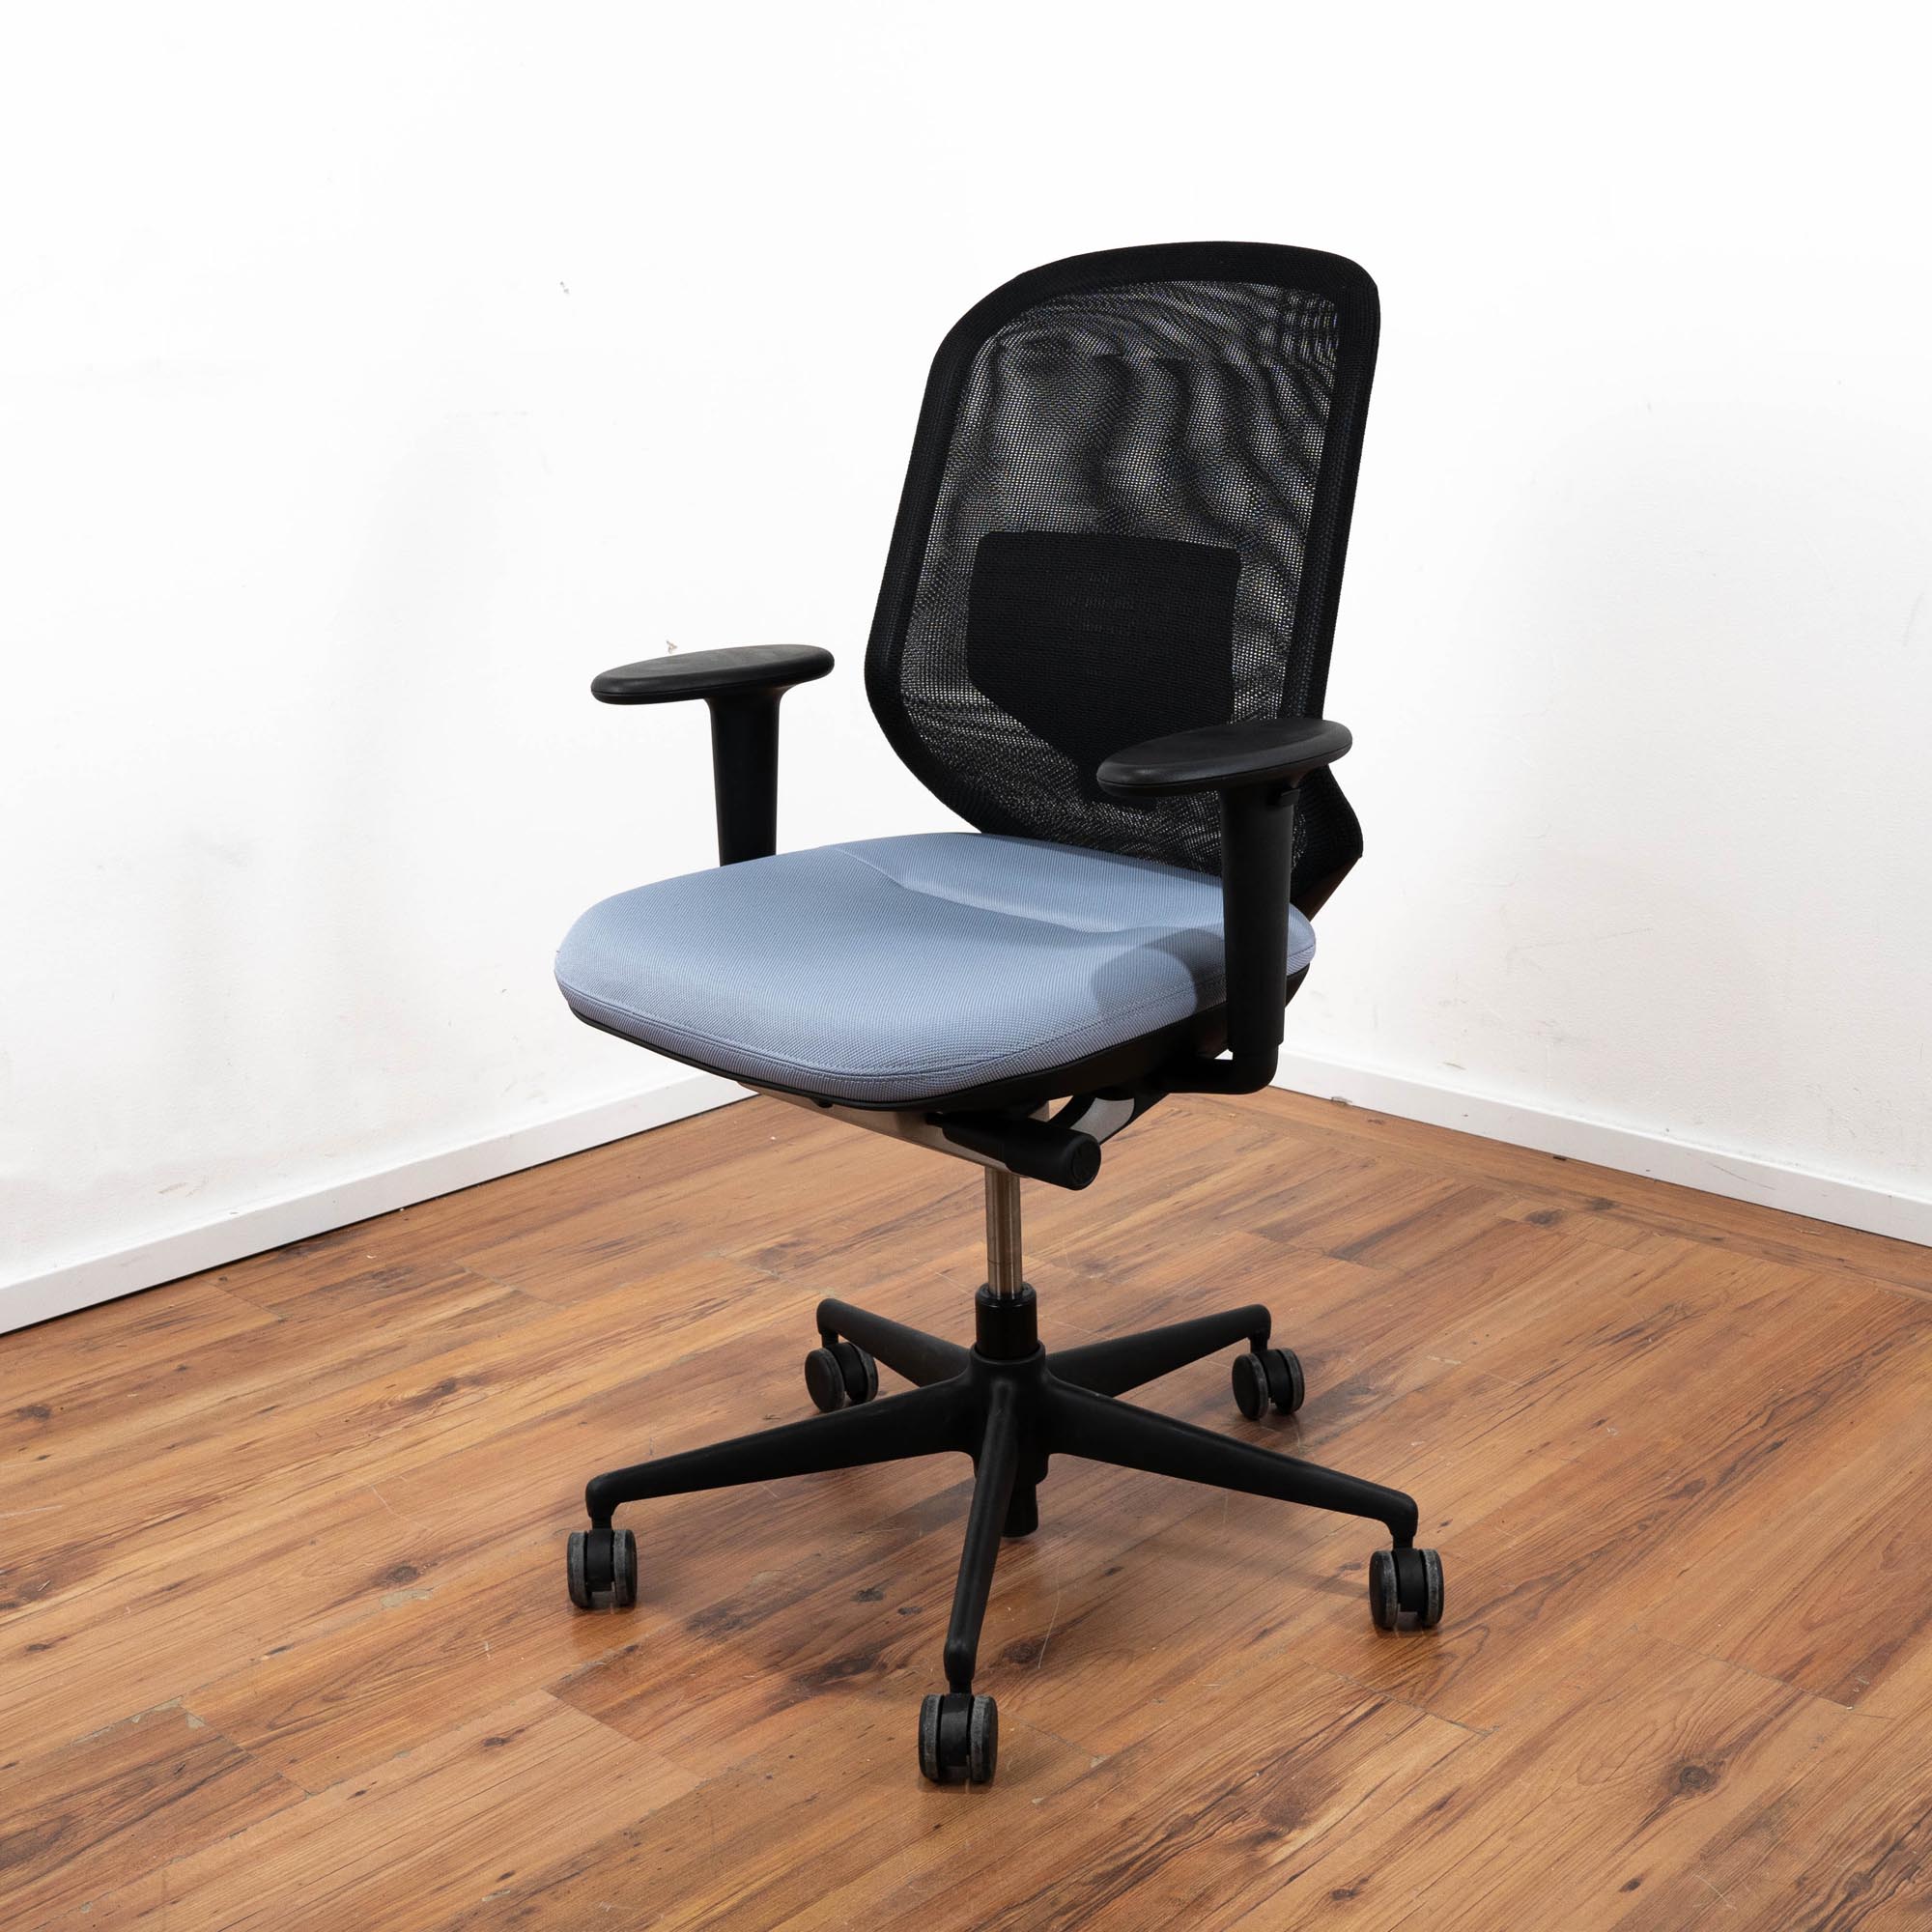 Vitra Bürodrehstuhl - Sitzpolster blau mit Netz-Rückenlehne schwarz